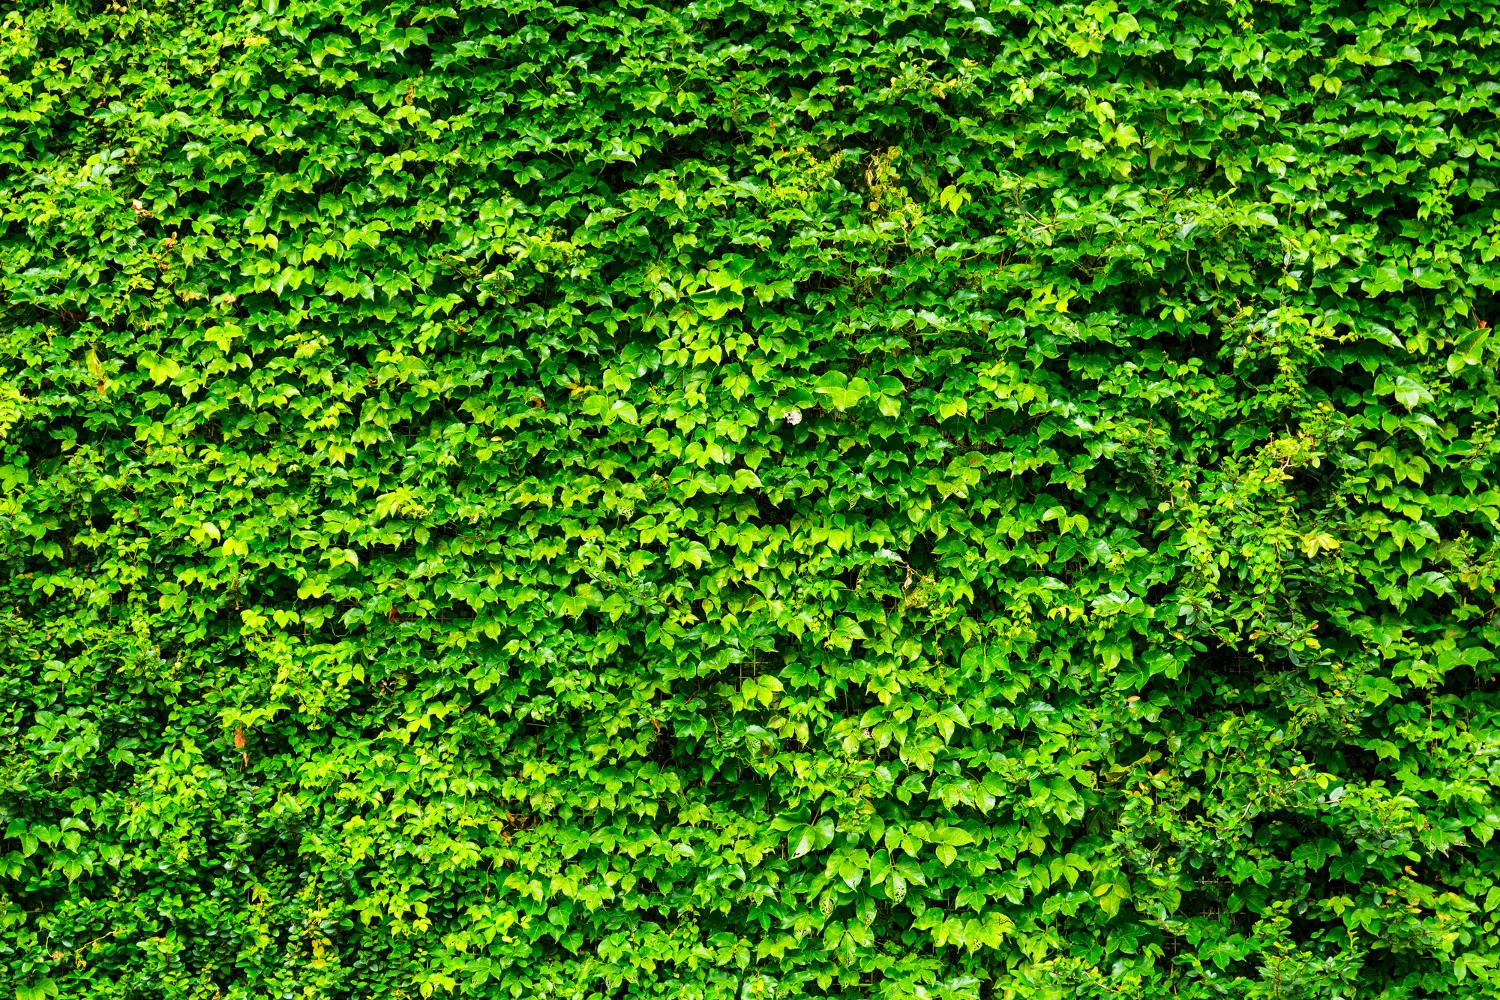 Grupa Azoty posadzi Zielone Ogrodzenie w ramach działań prośrodowiskowych